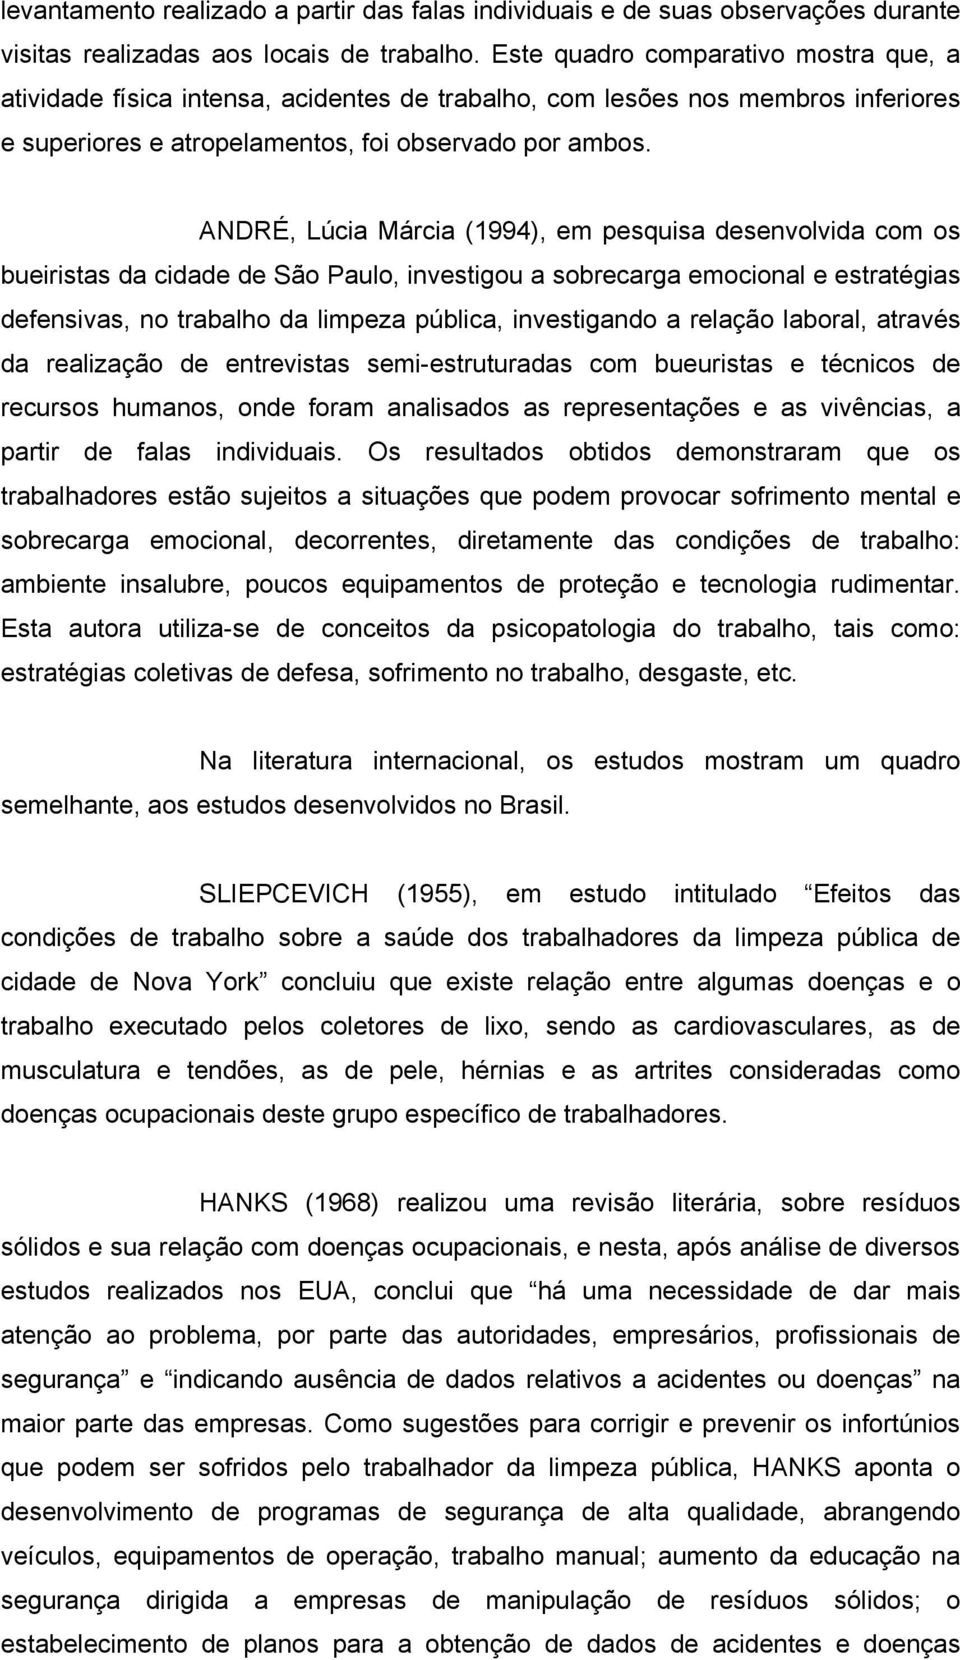 ANDRÉ, Lúcia Márcia (1994), em pesquisa desenvolvida com os bueiristas da cidade de São Paulo, investigou a sobrecarga emocional e estratégias defensivas, no trabalho da limpeza pública, investigando